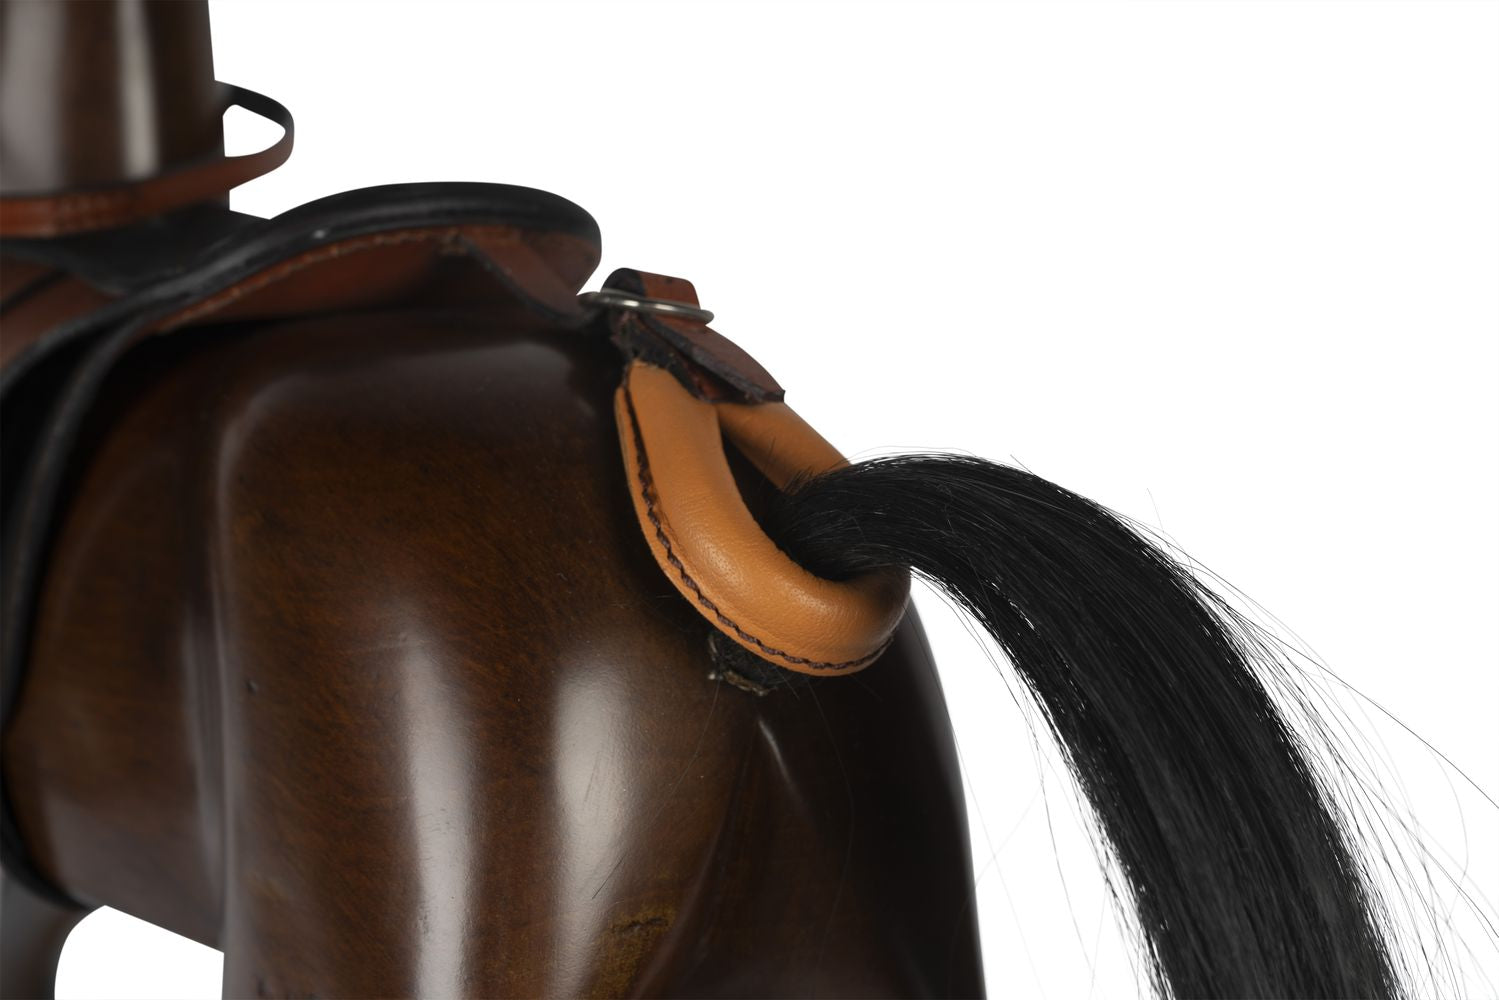 Autentyczne modele wiktoriańskie repliki koni na bujanie, ciemnobrązowy